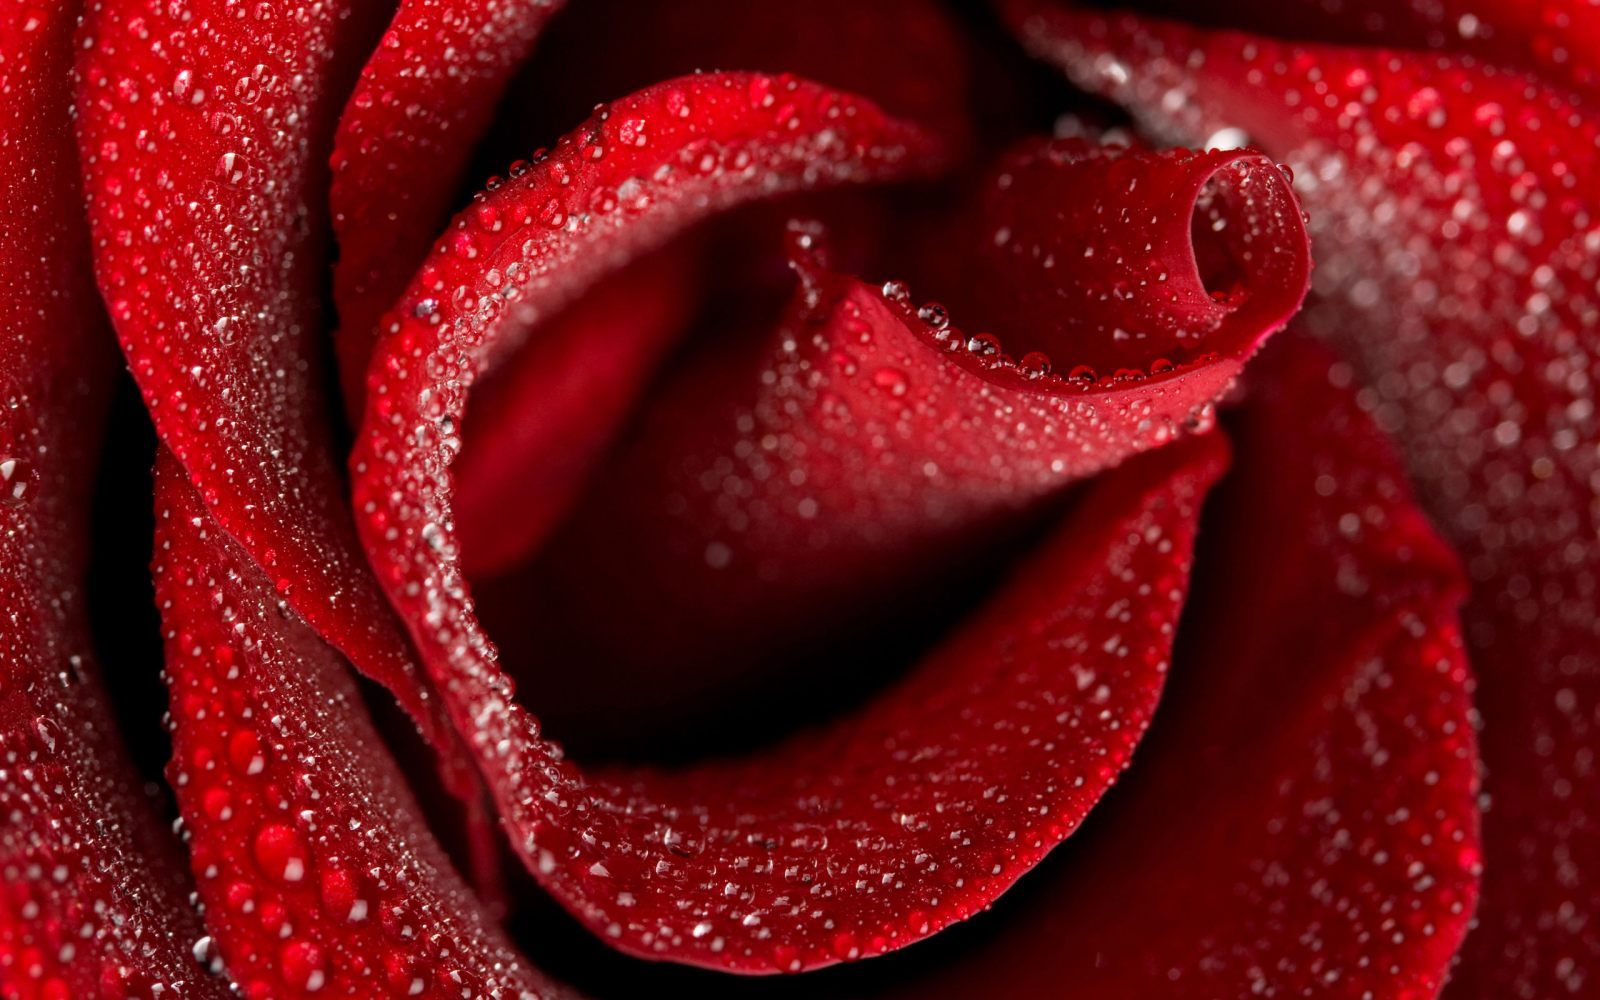 Rosa roja con rocío